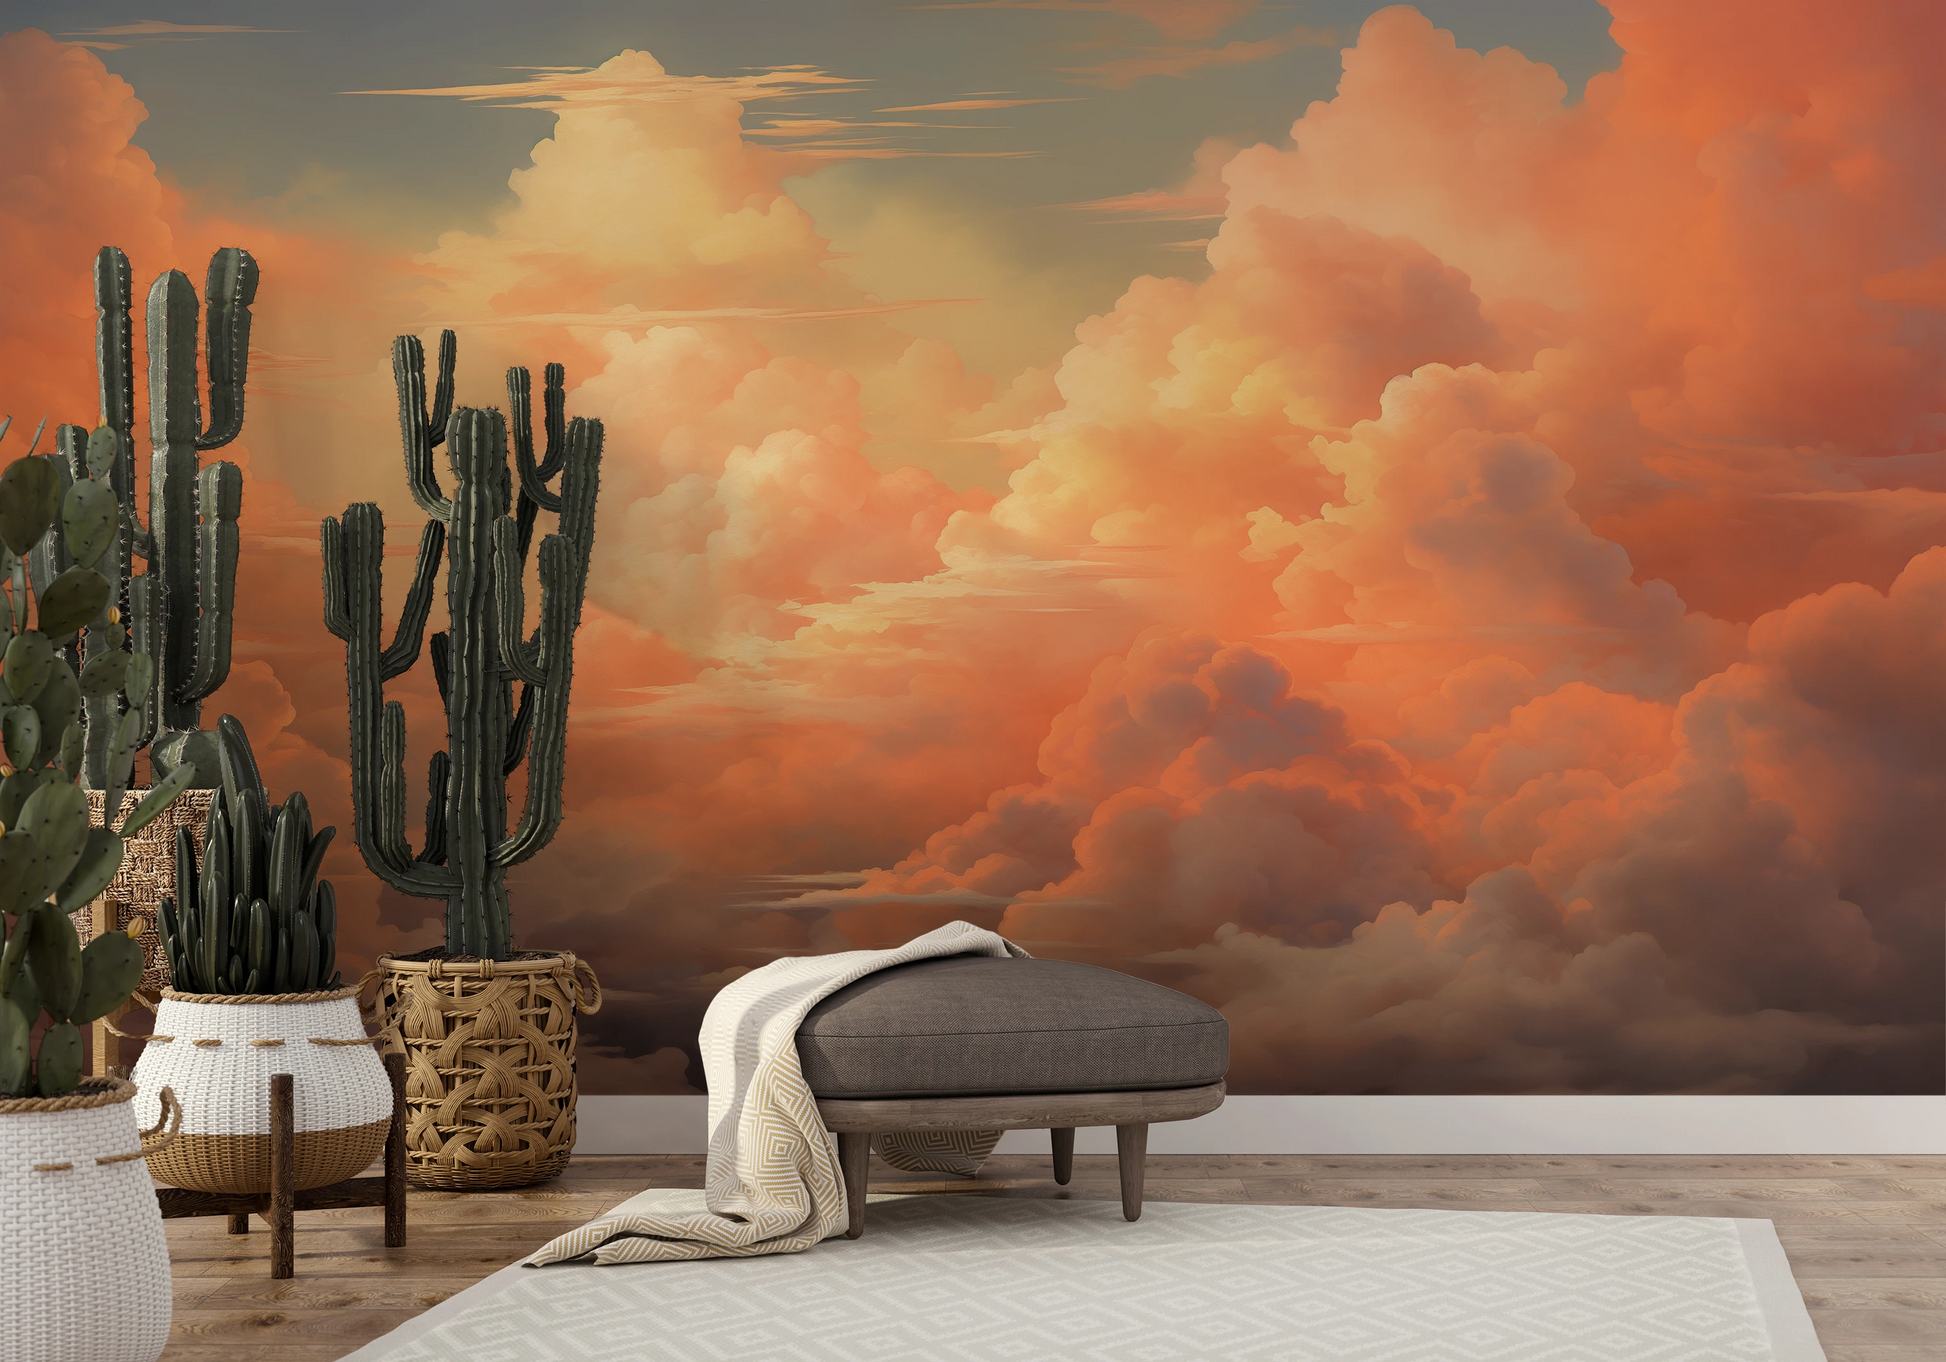 Wzór fototapety artystycznej o nazwie Sunset Serenity pokazanej w aranżacji wnętrza.